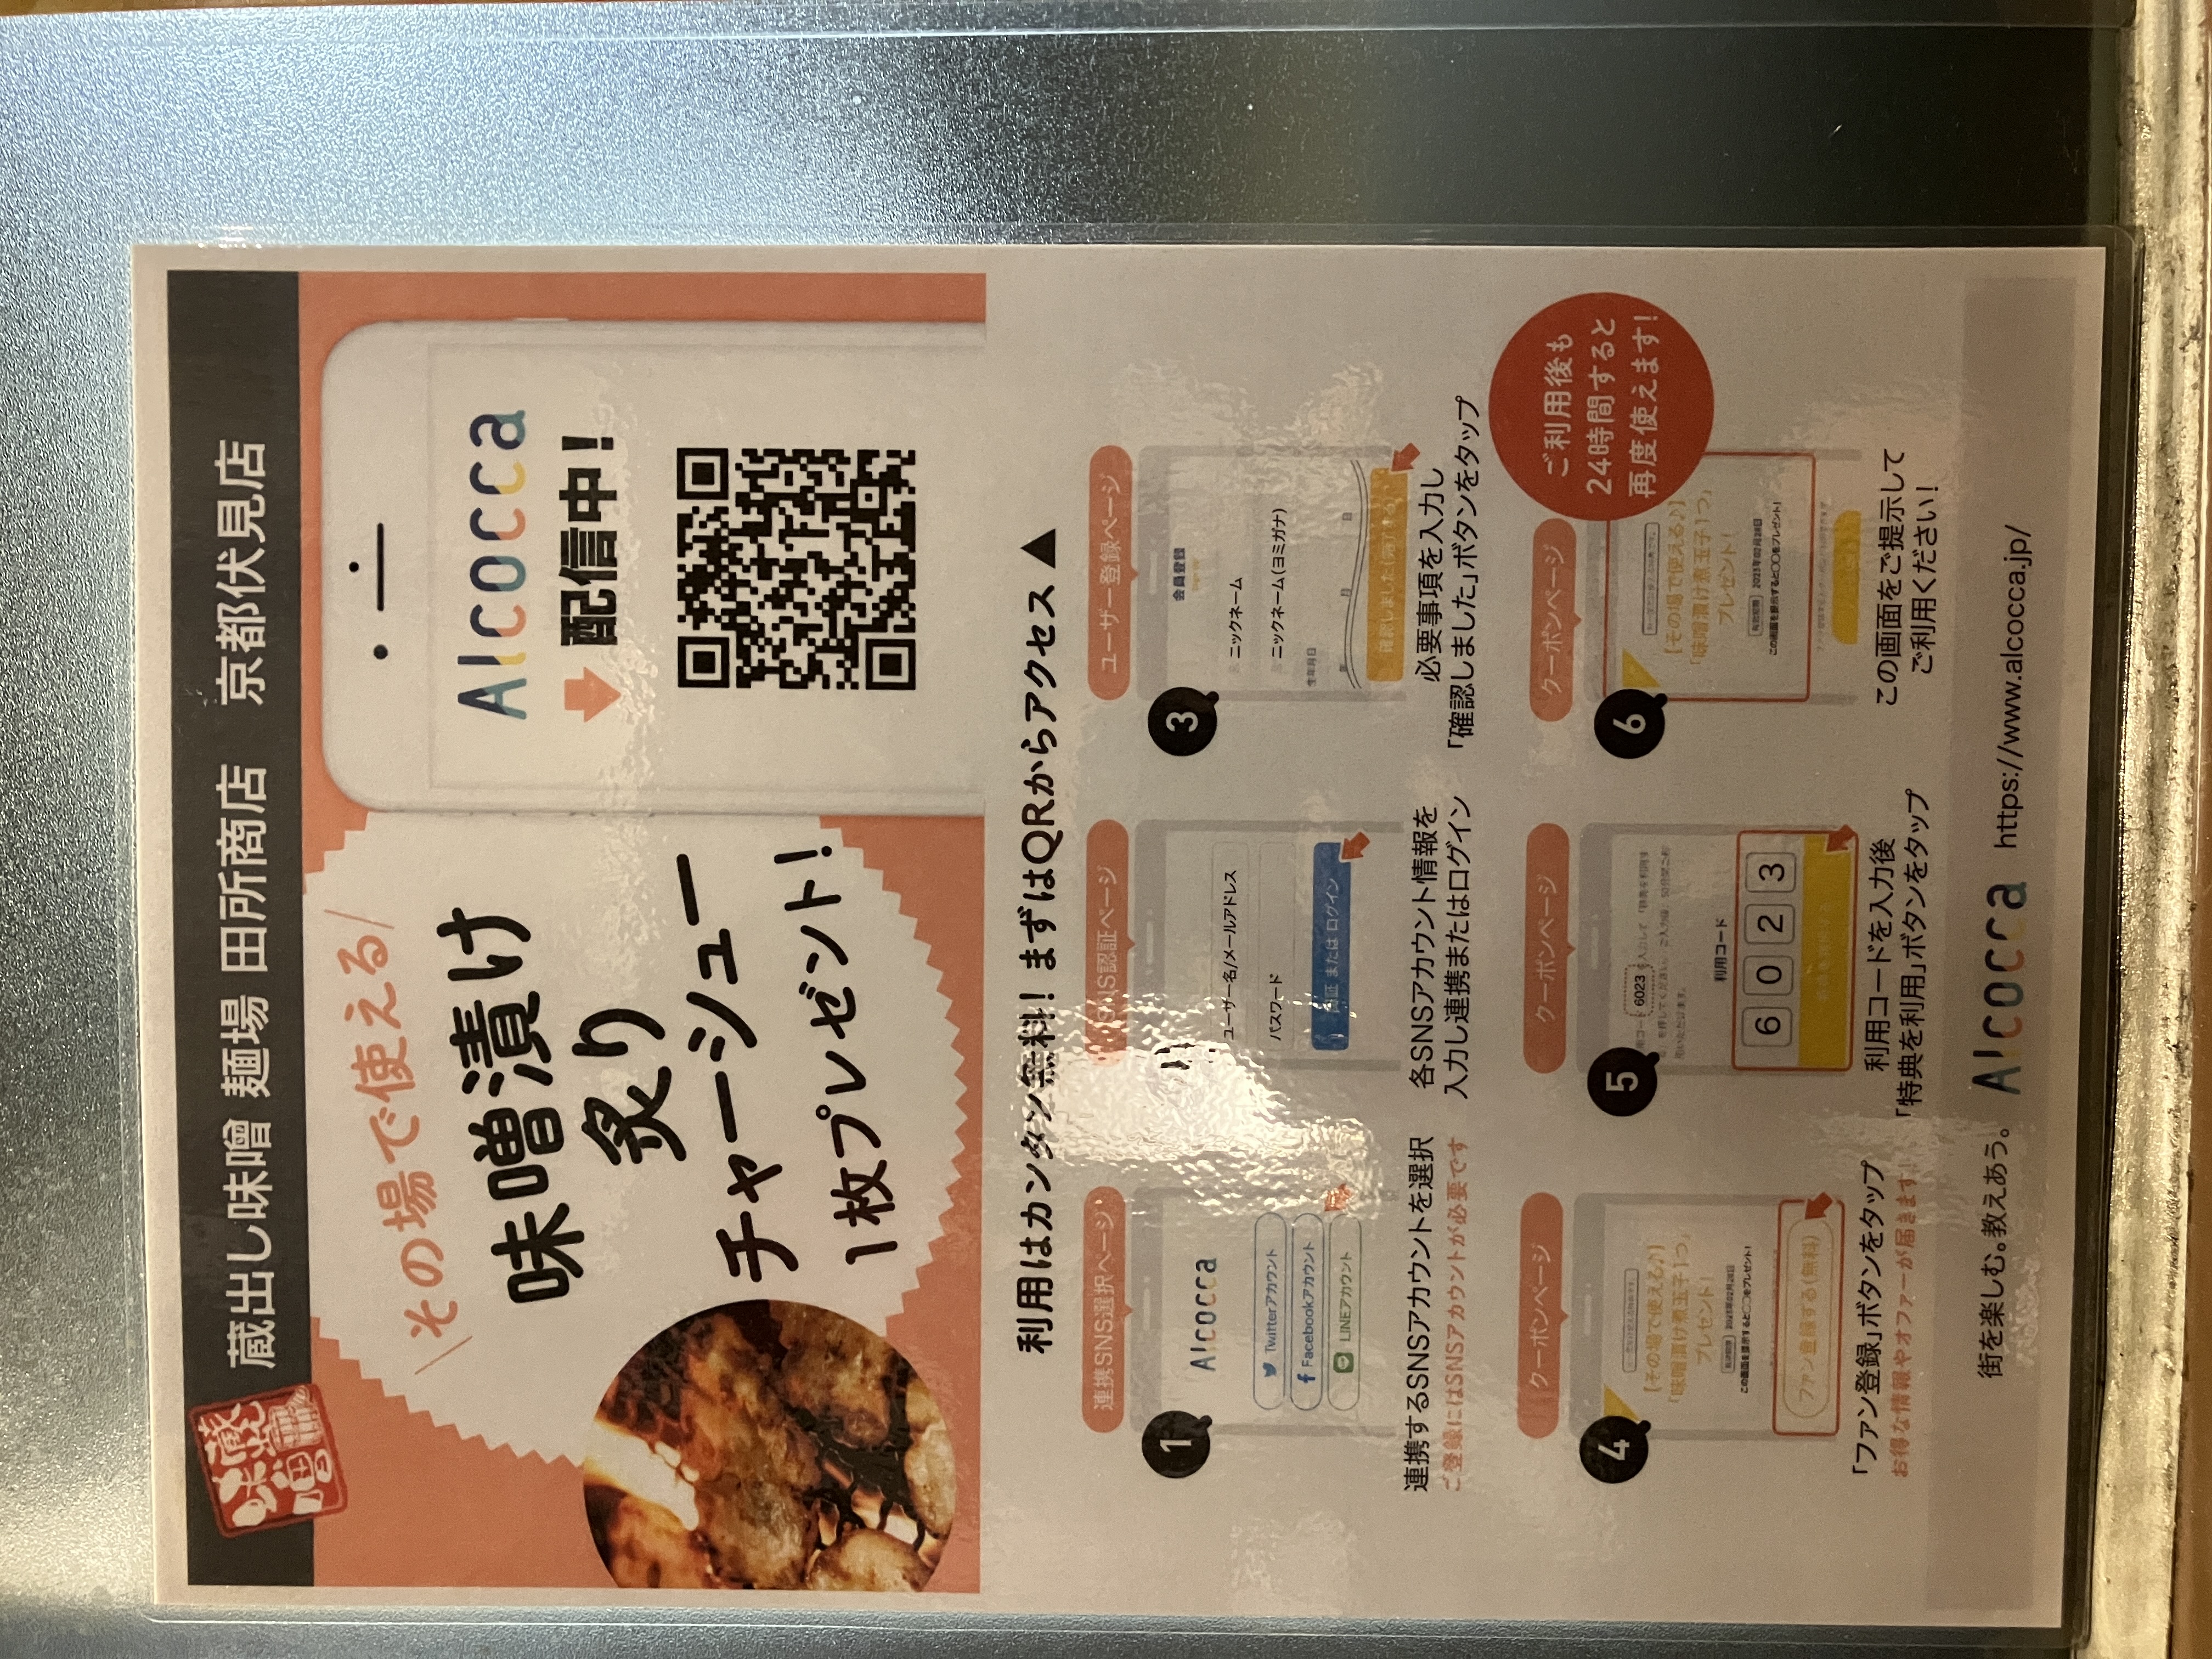 麺場 田所商店のスパイス系味噌らーめん3種食べ比べの試食に当選しました。